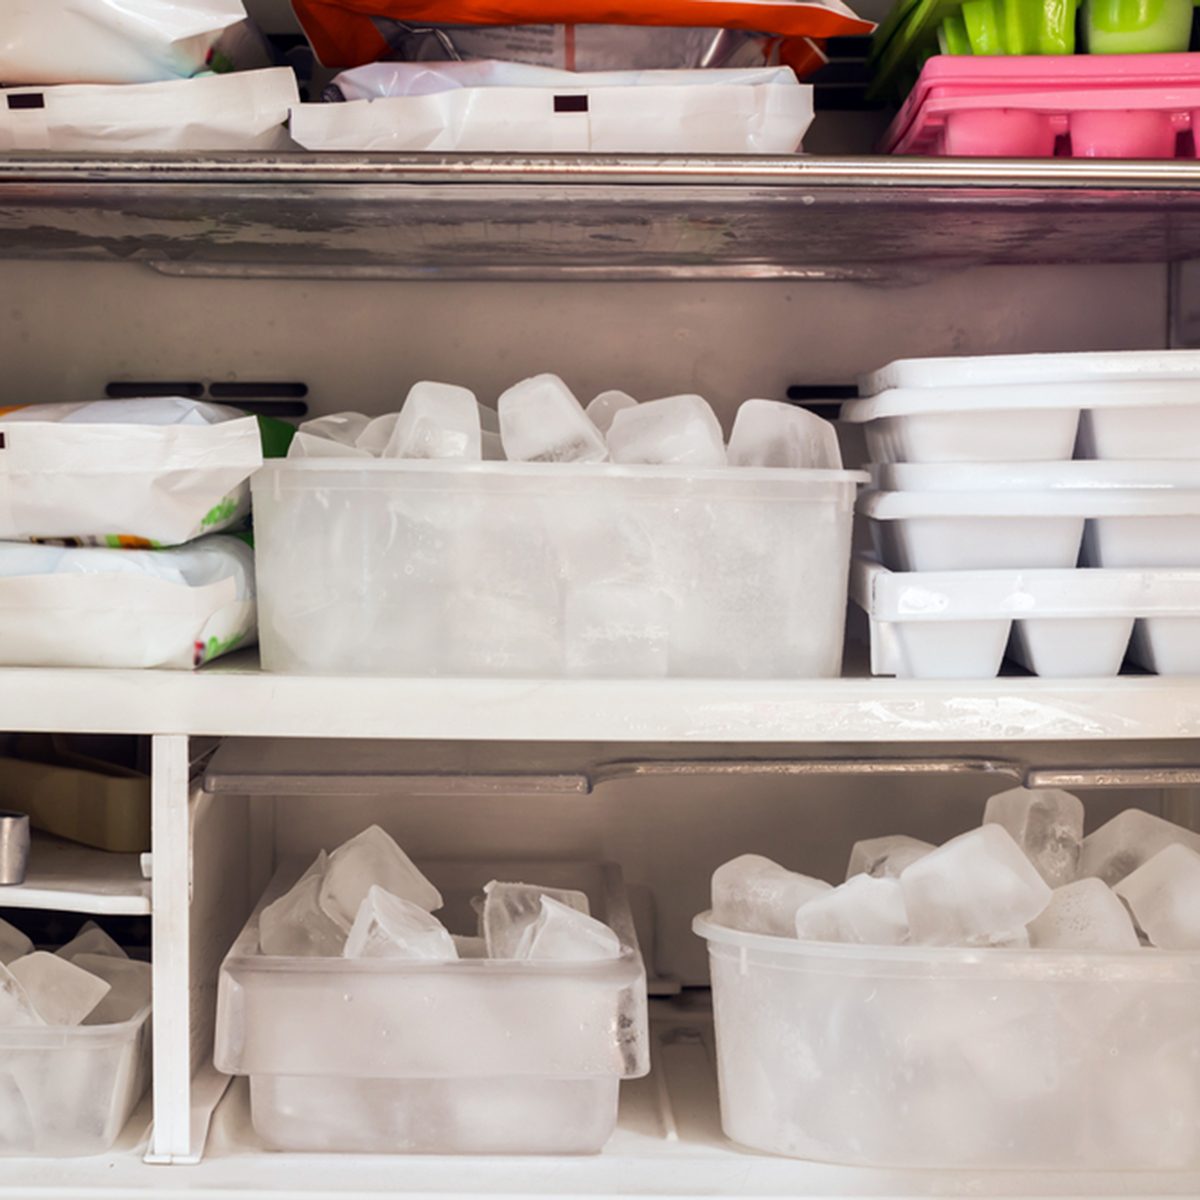 冰箱里装满了冰块和冷冻食品